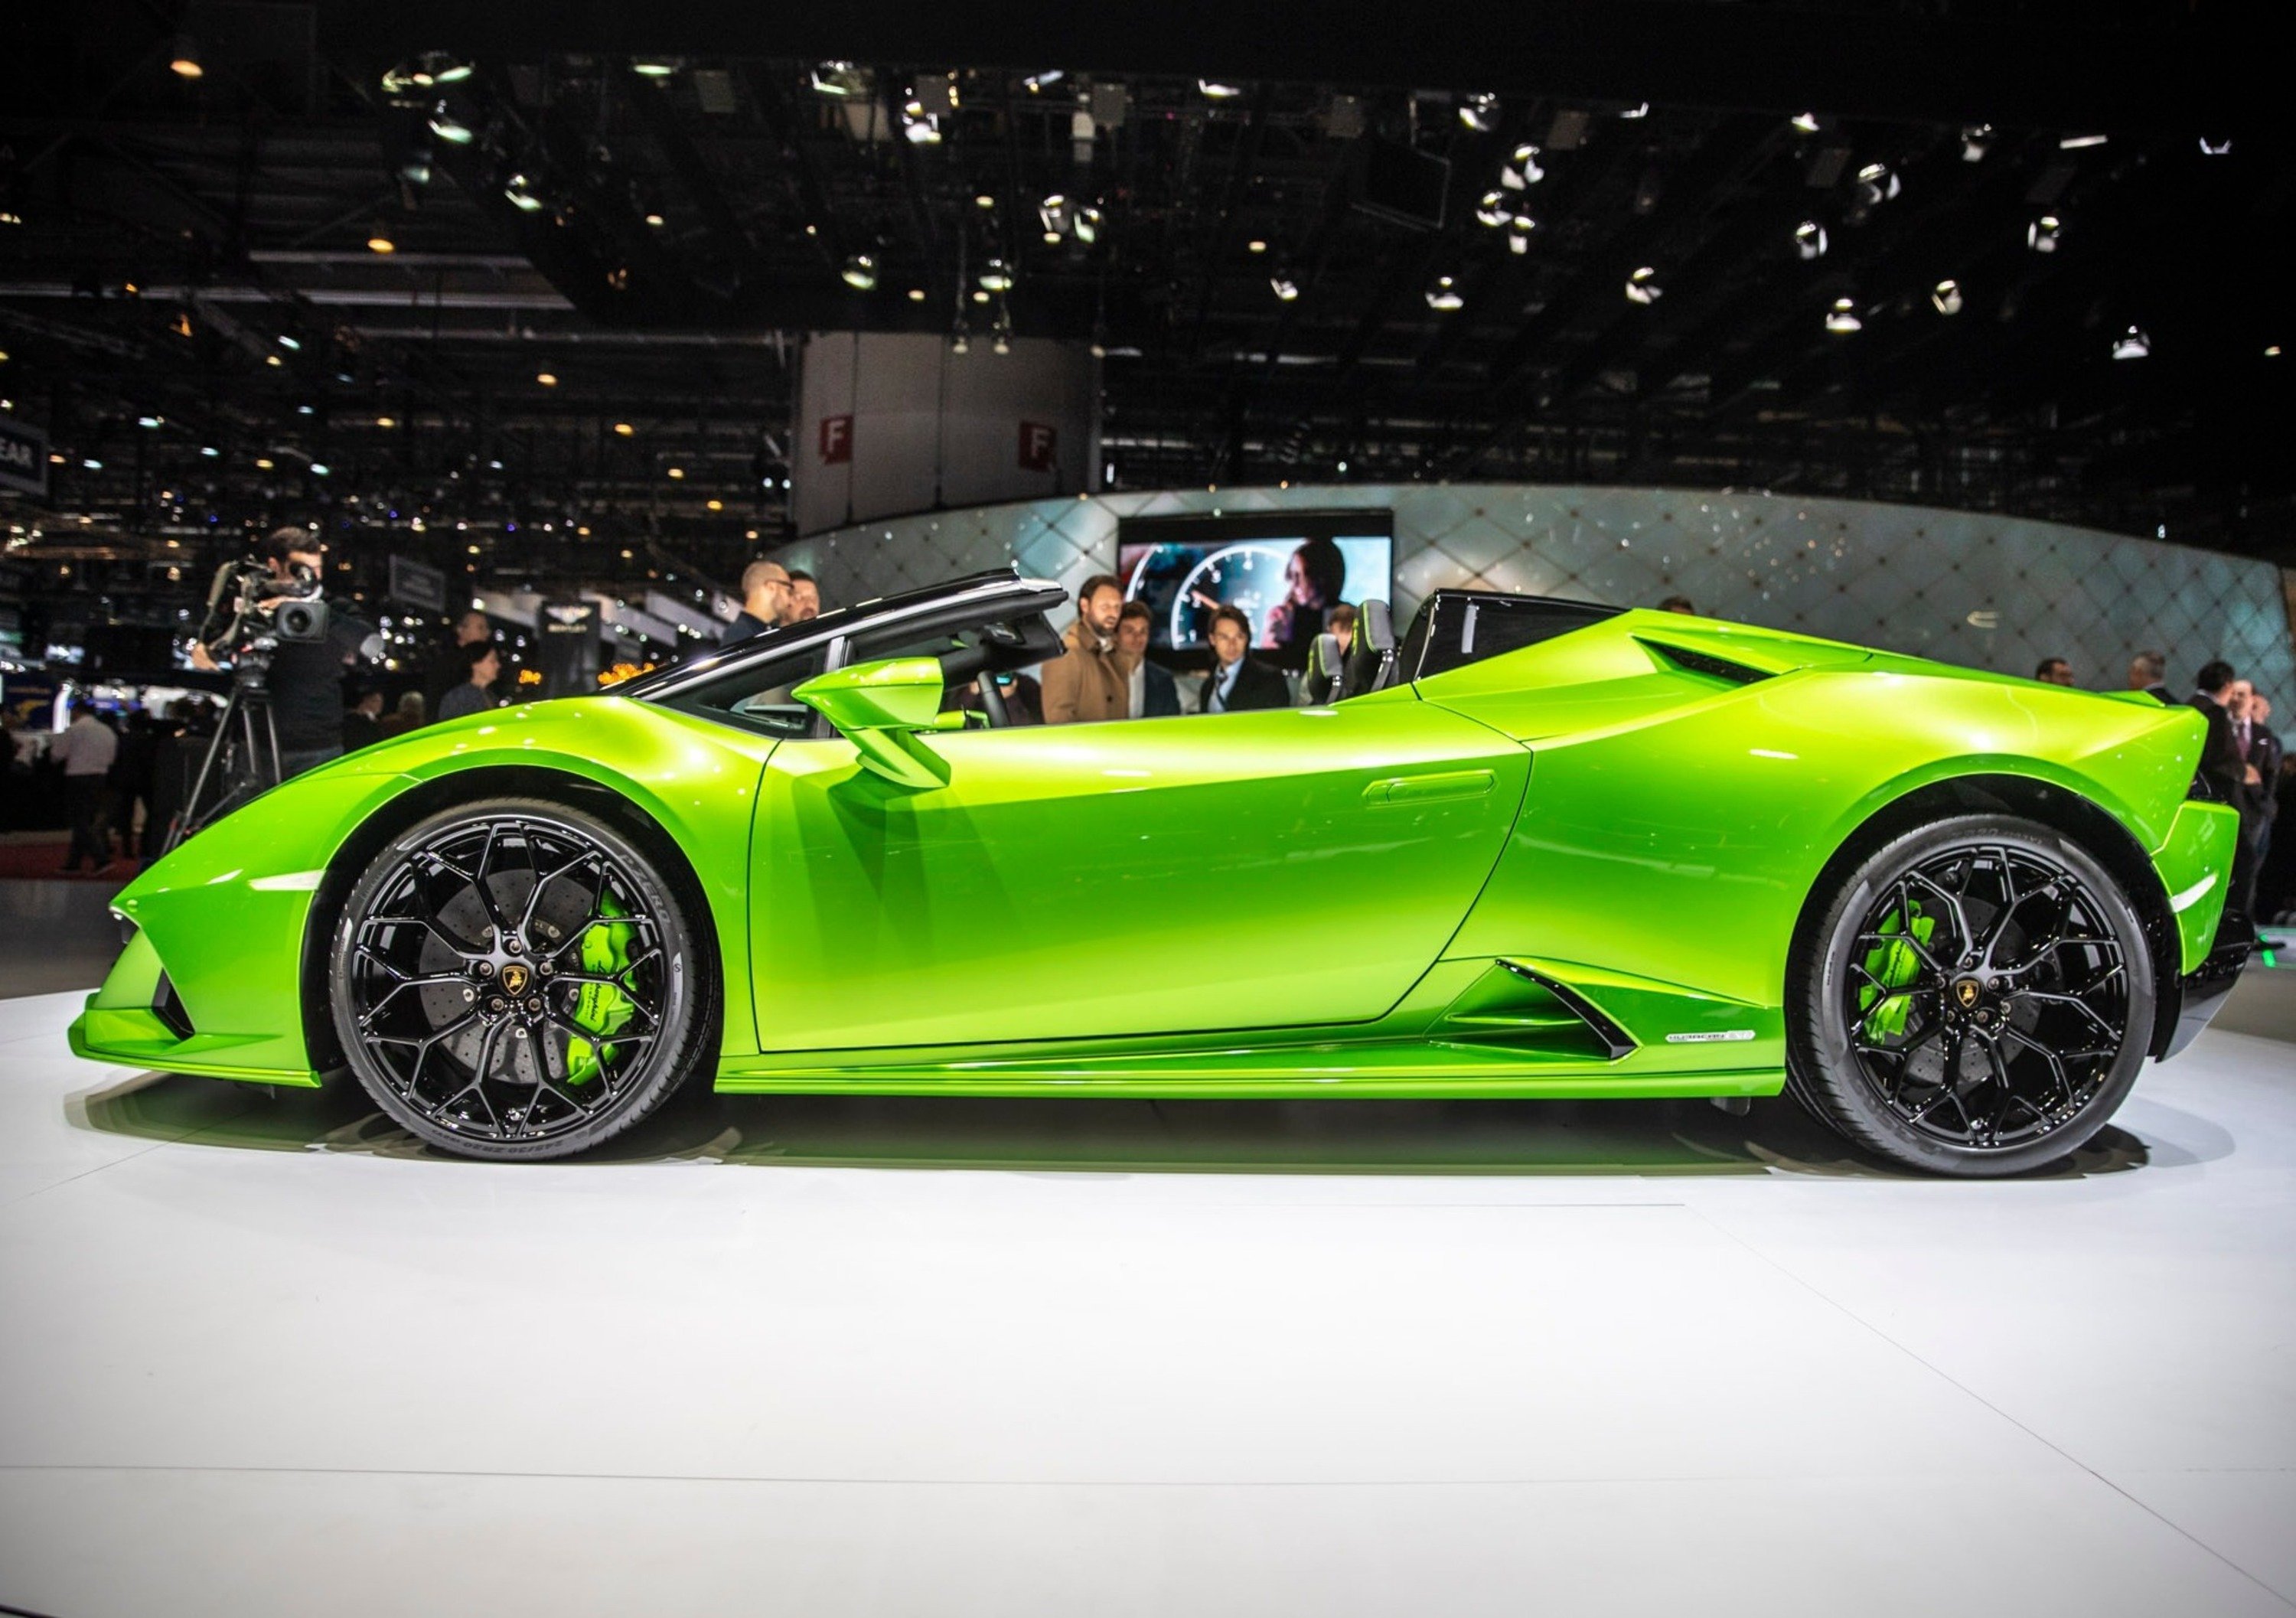 Lamborghini, fatturato cresciuto del 40% nel 2018